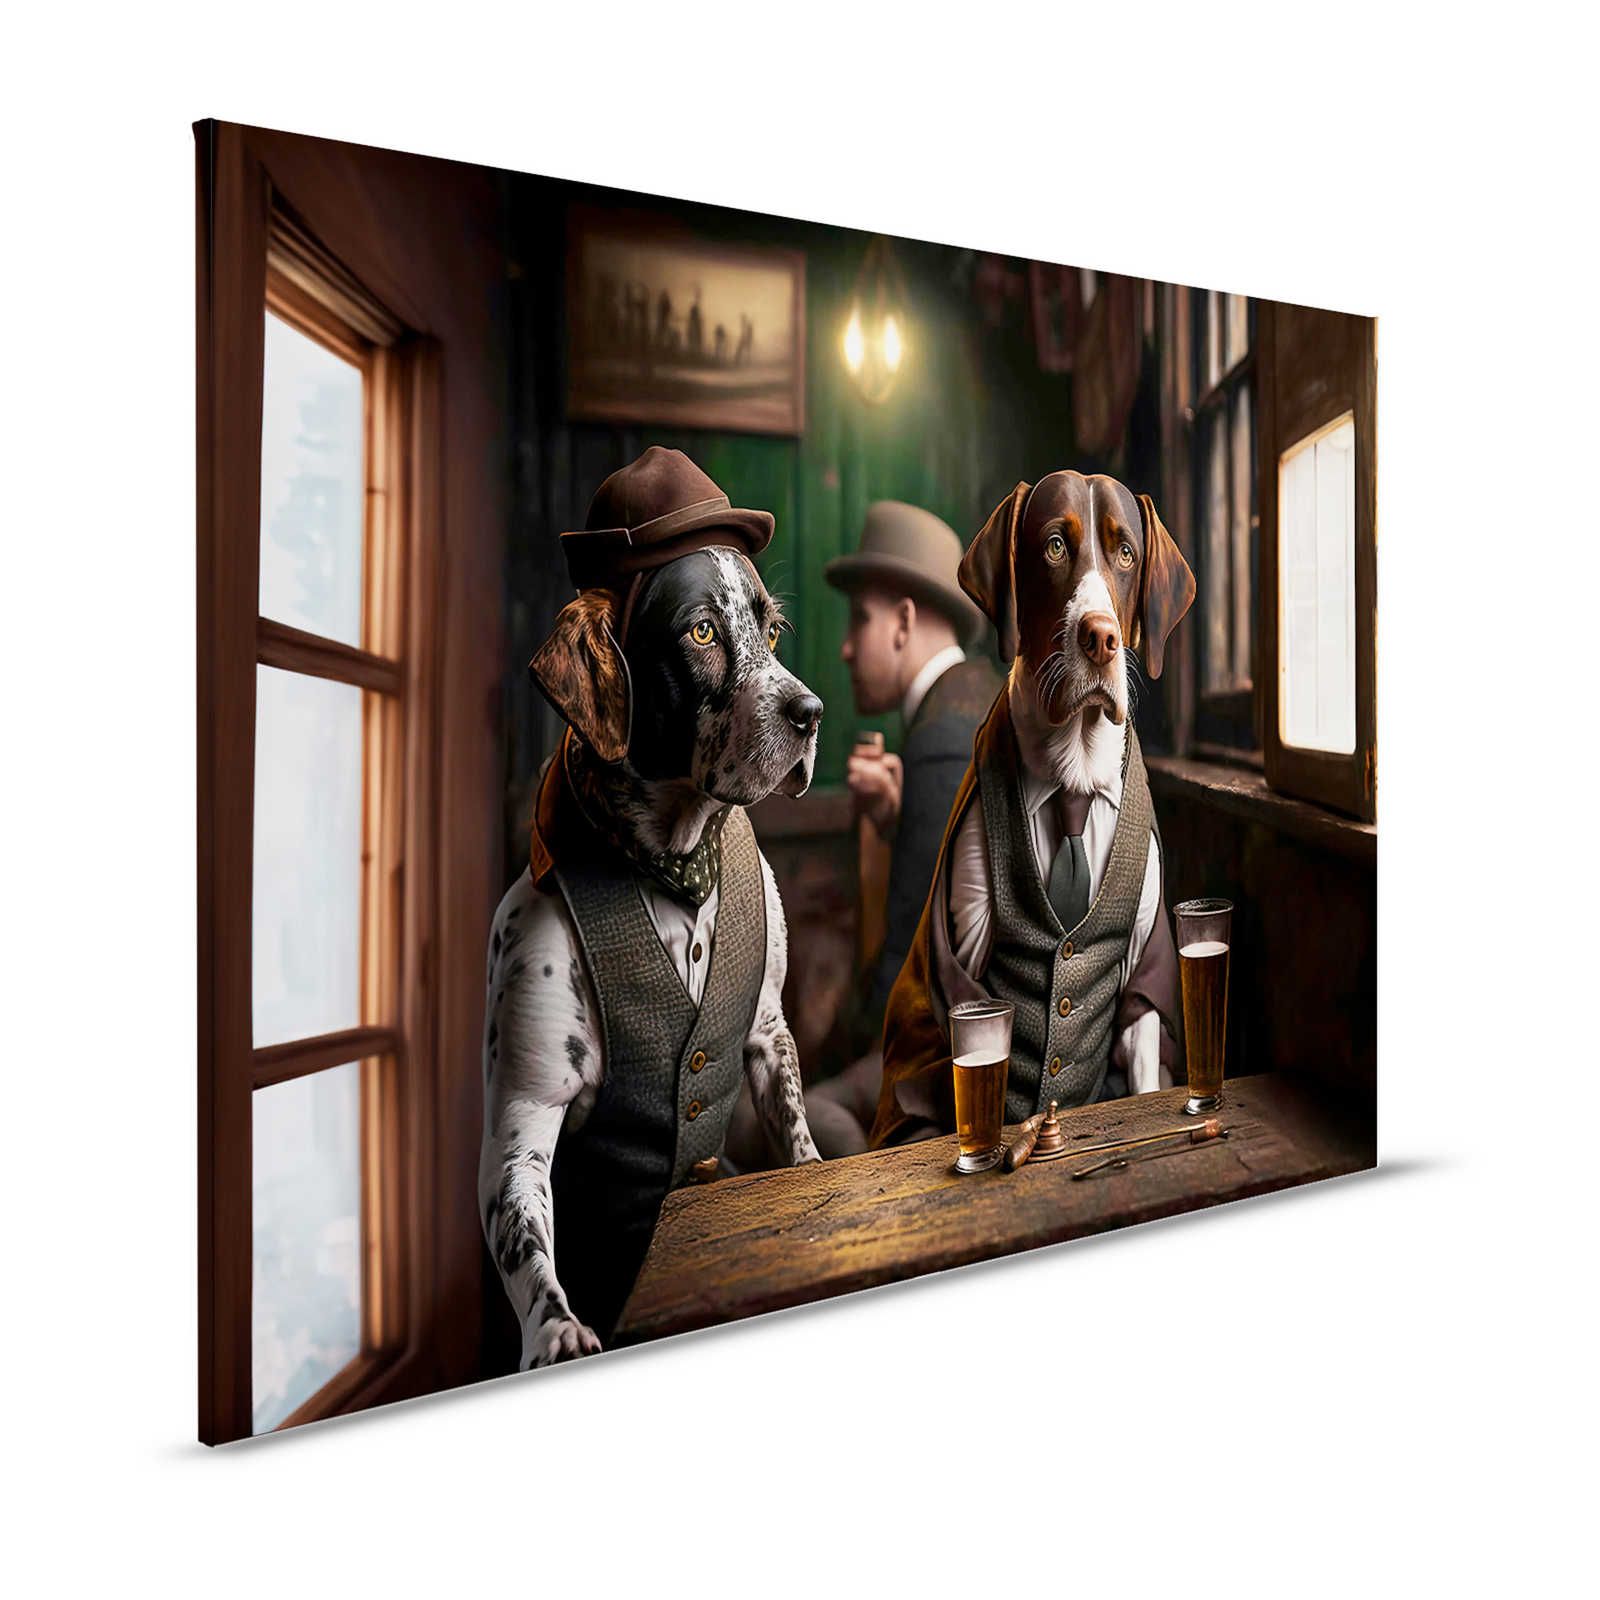 KI-Leinwandbild »Doggy Bar« – 120 cm x 80 cm
